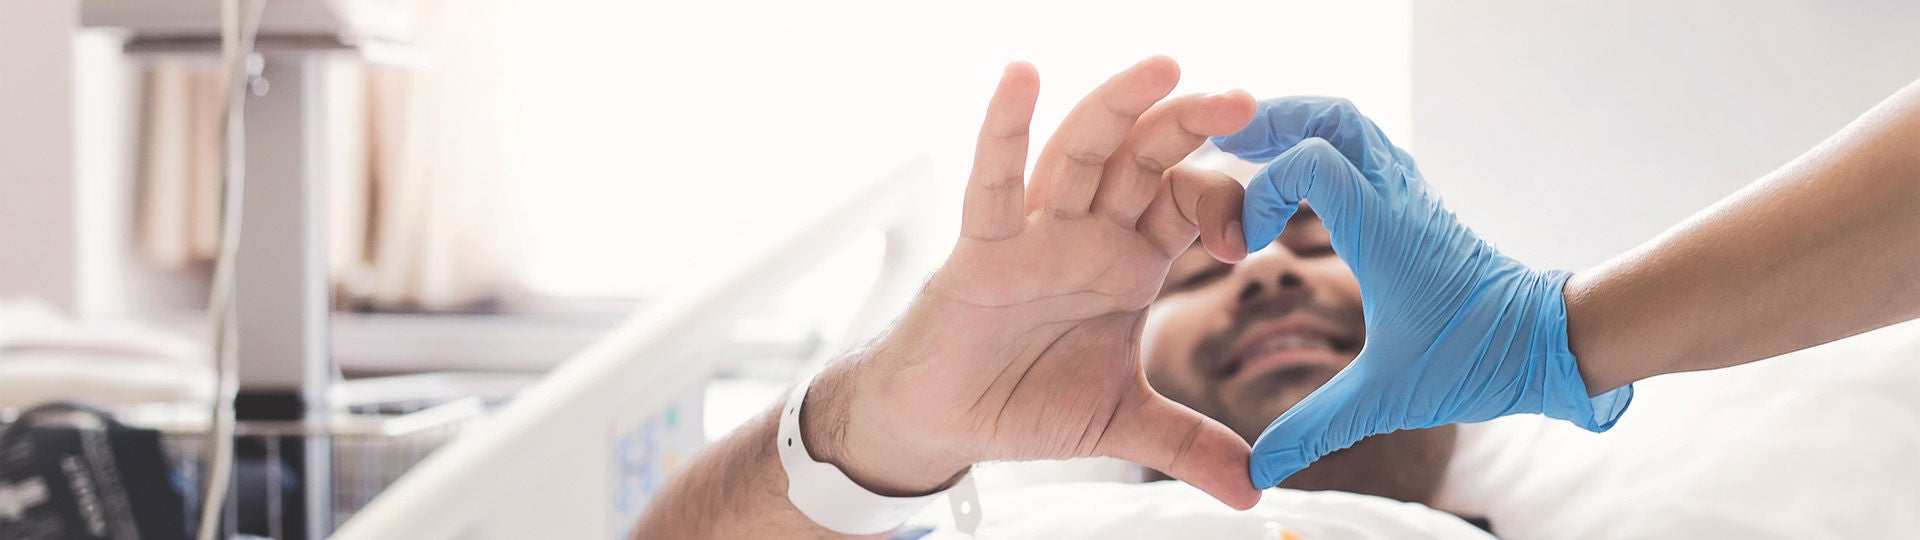 Ein Herzpatient liegt in einem krankenhausbett und formt mit seiner Hand und der Hand eines Arztes ein Herz.  Bildquelle: isayildiz/iStock